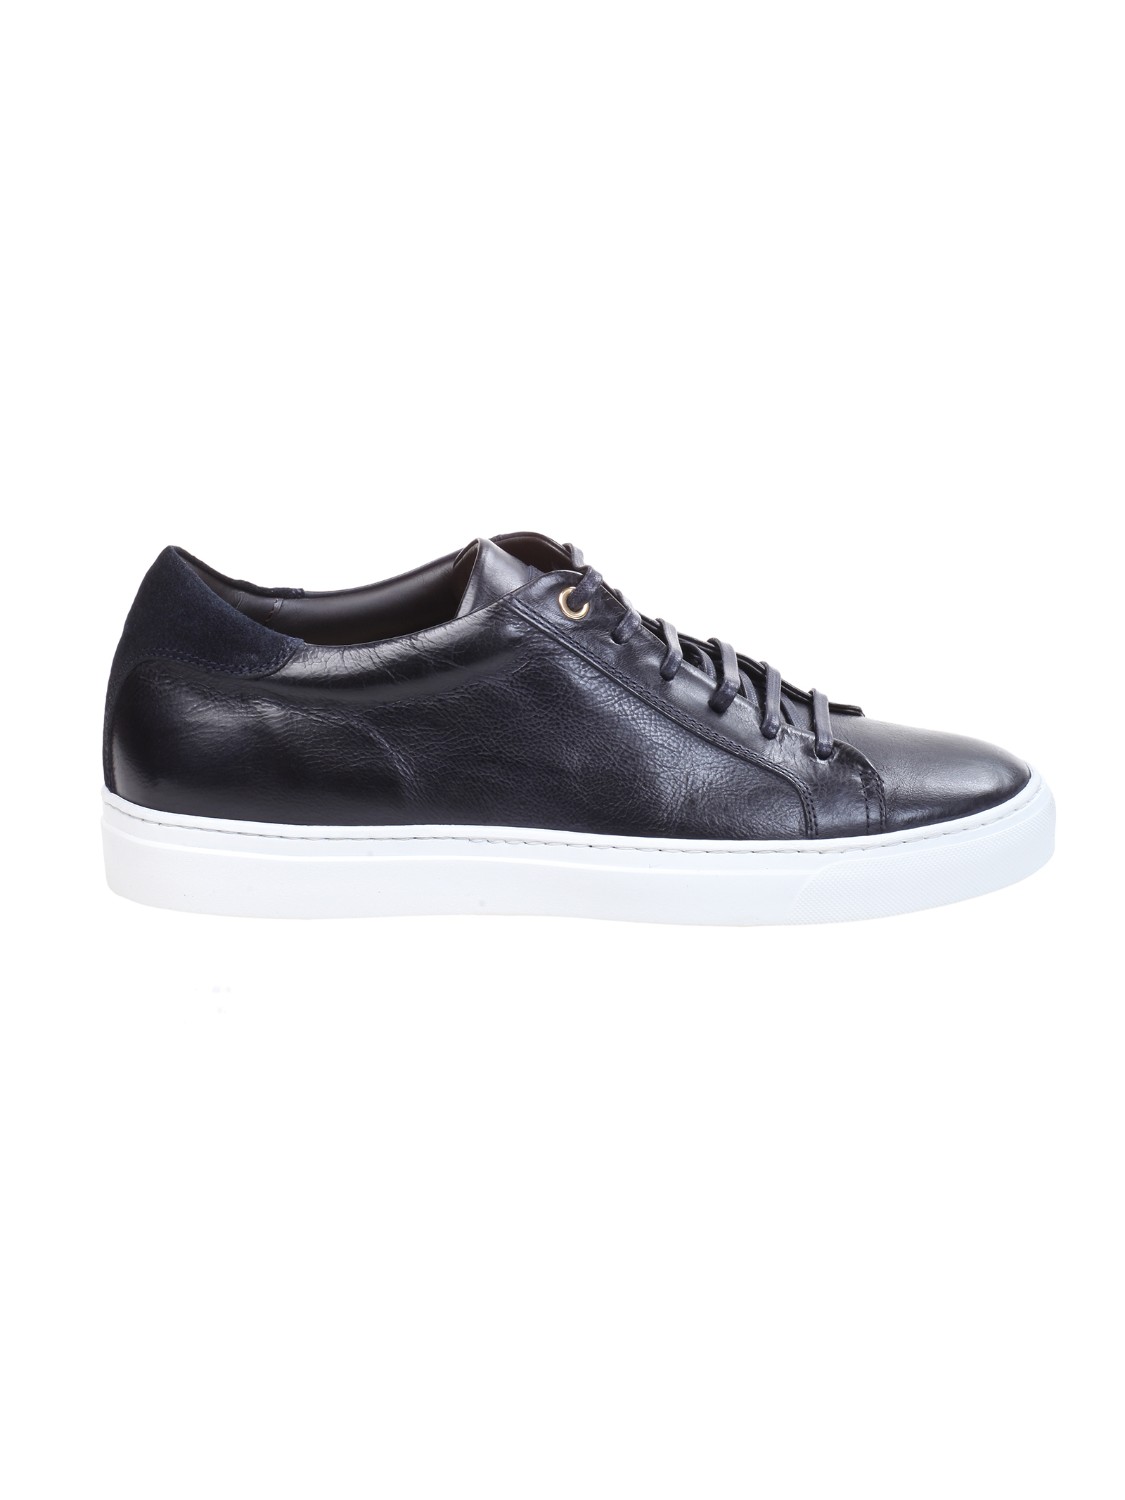 shop CORVARI Saldi Scarpe: Corvari sneakers in pelle blu scura.
Chiusura con lacci.
Dettagli in camoscio.
Made in Italy.
Composizione: 100% pelle.. 9650 TODI-12 number 19099